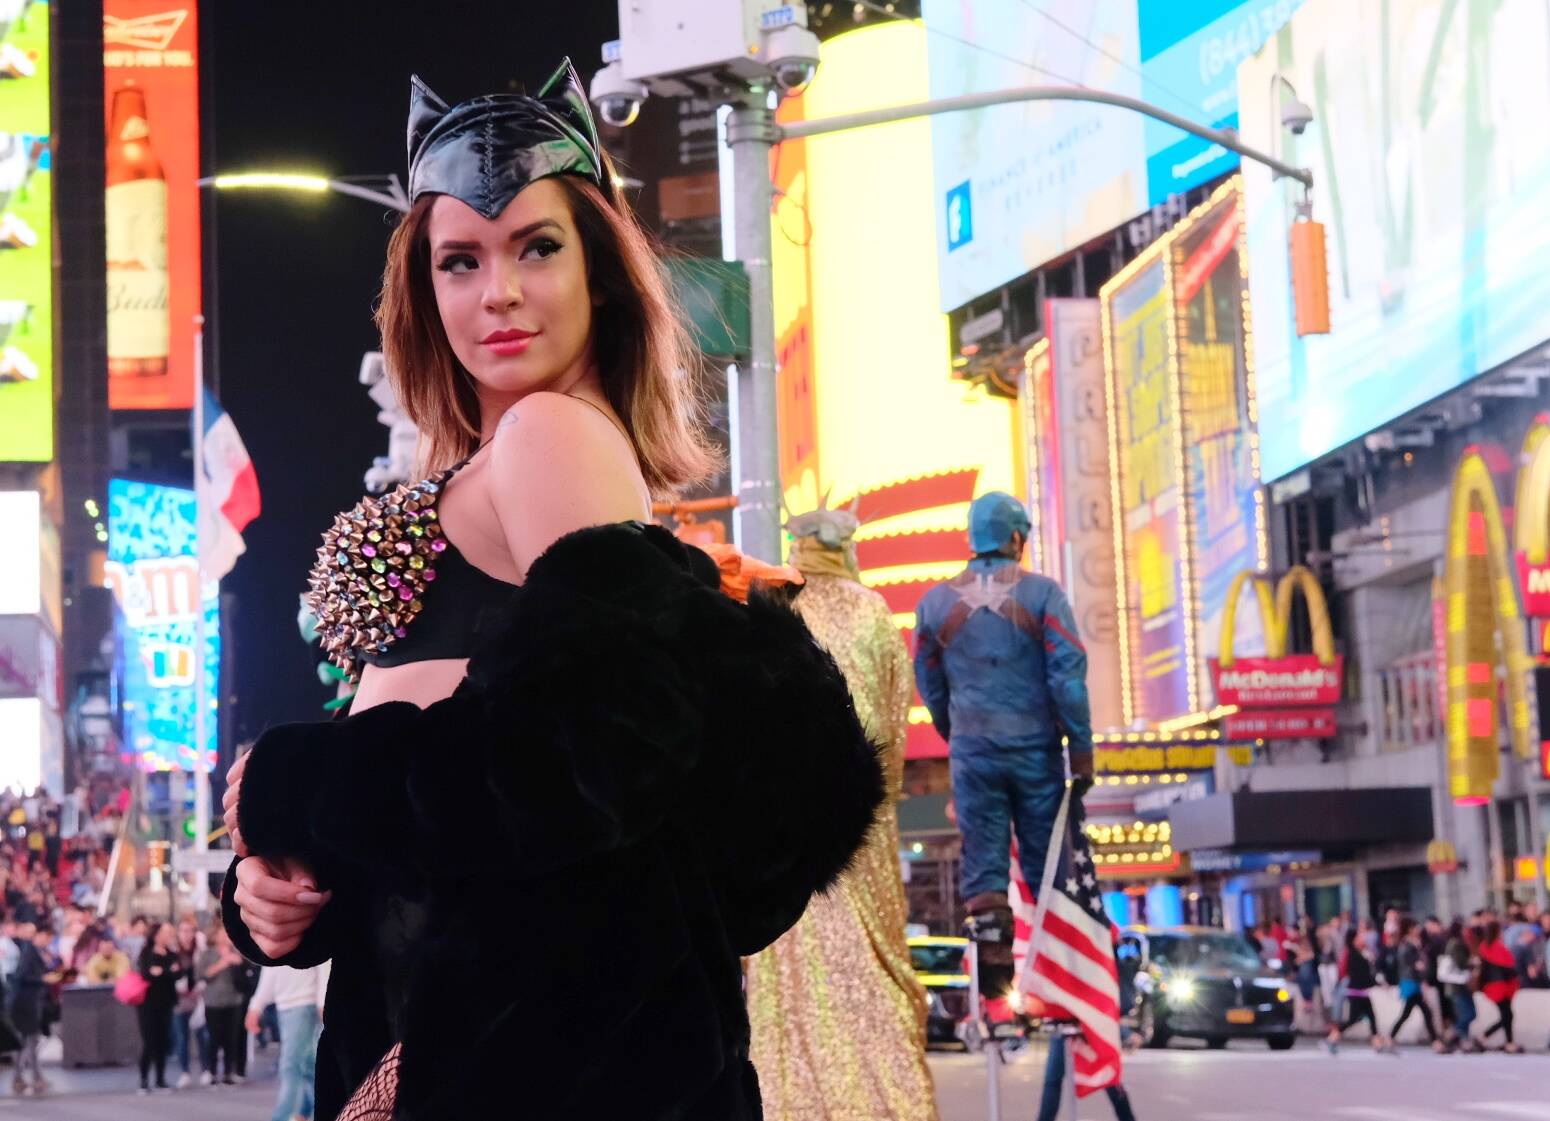 Encarnando uma Mulher-Gato para lá de provcante, Denise Dias seduz na Times Square. Foto: Sergio Bochert